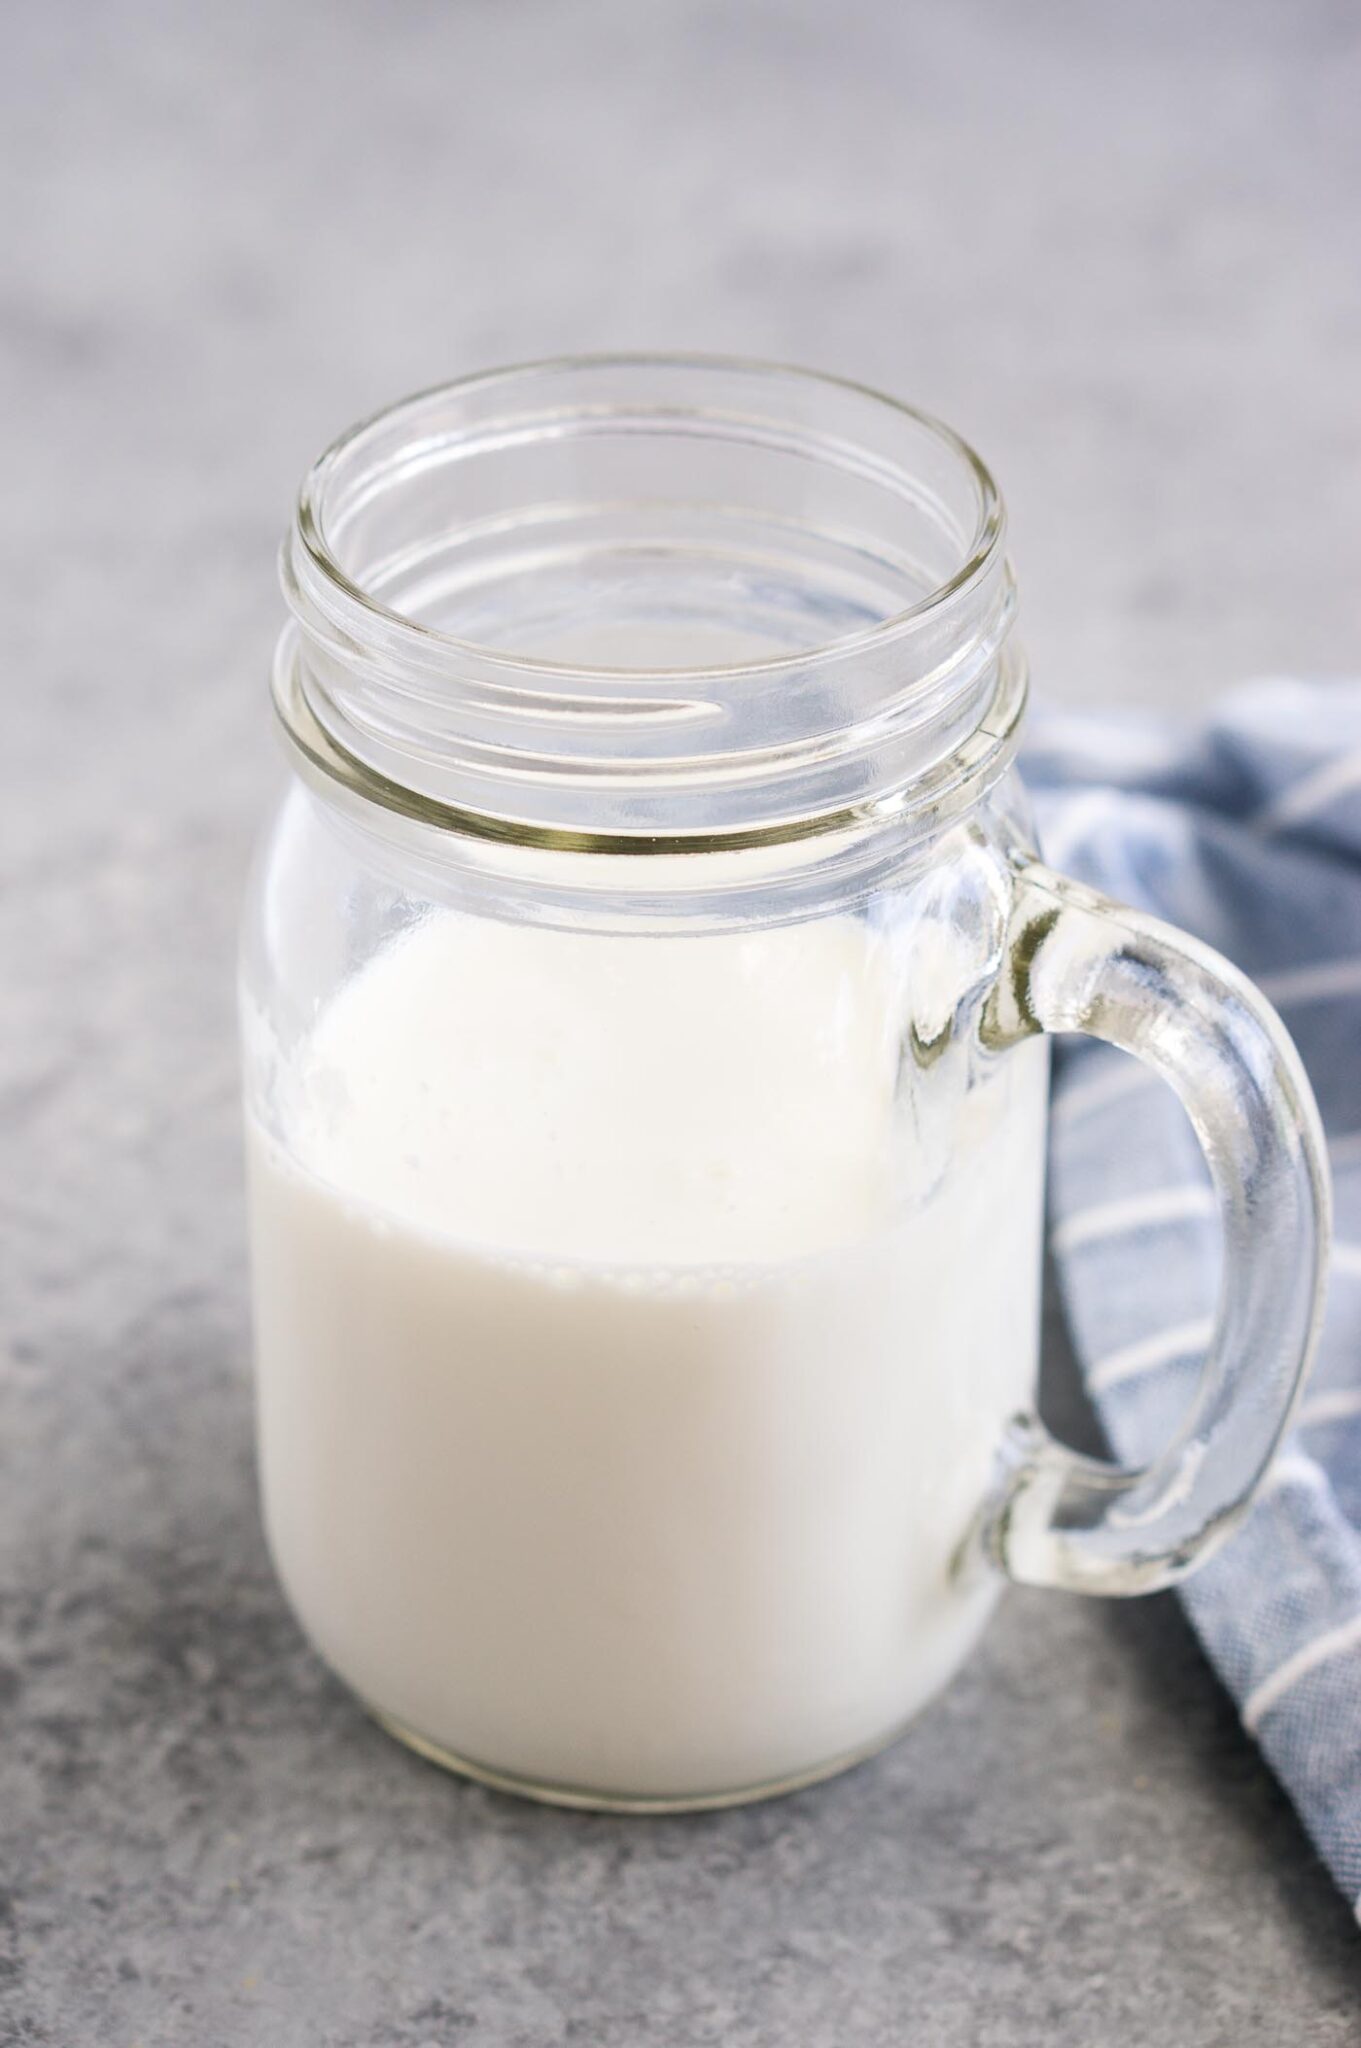 buttermilk in a jar